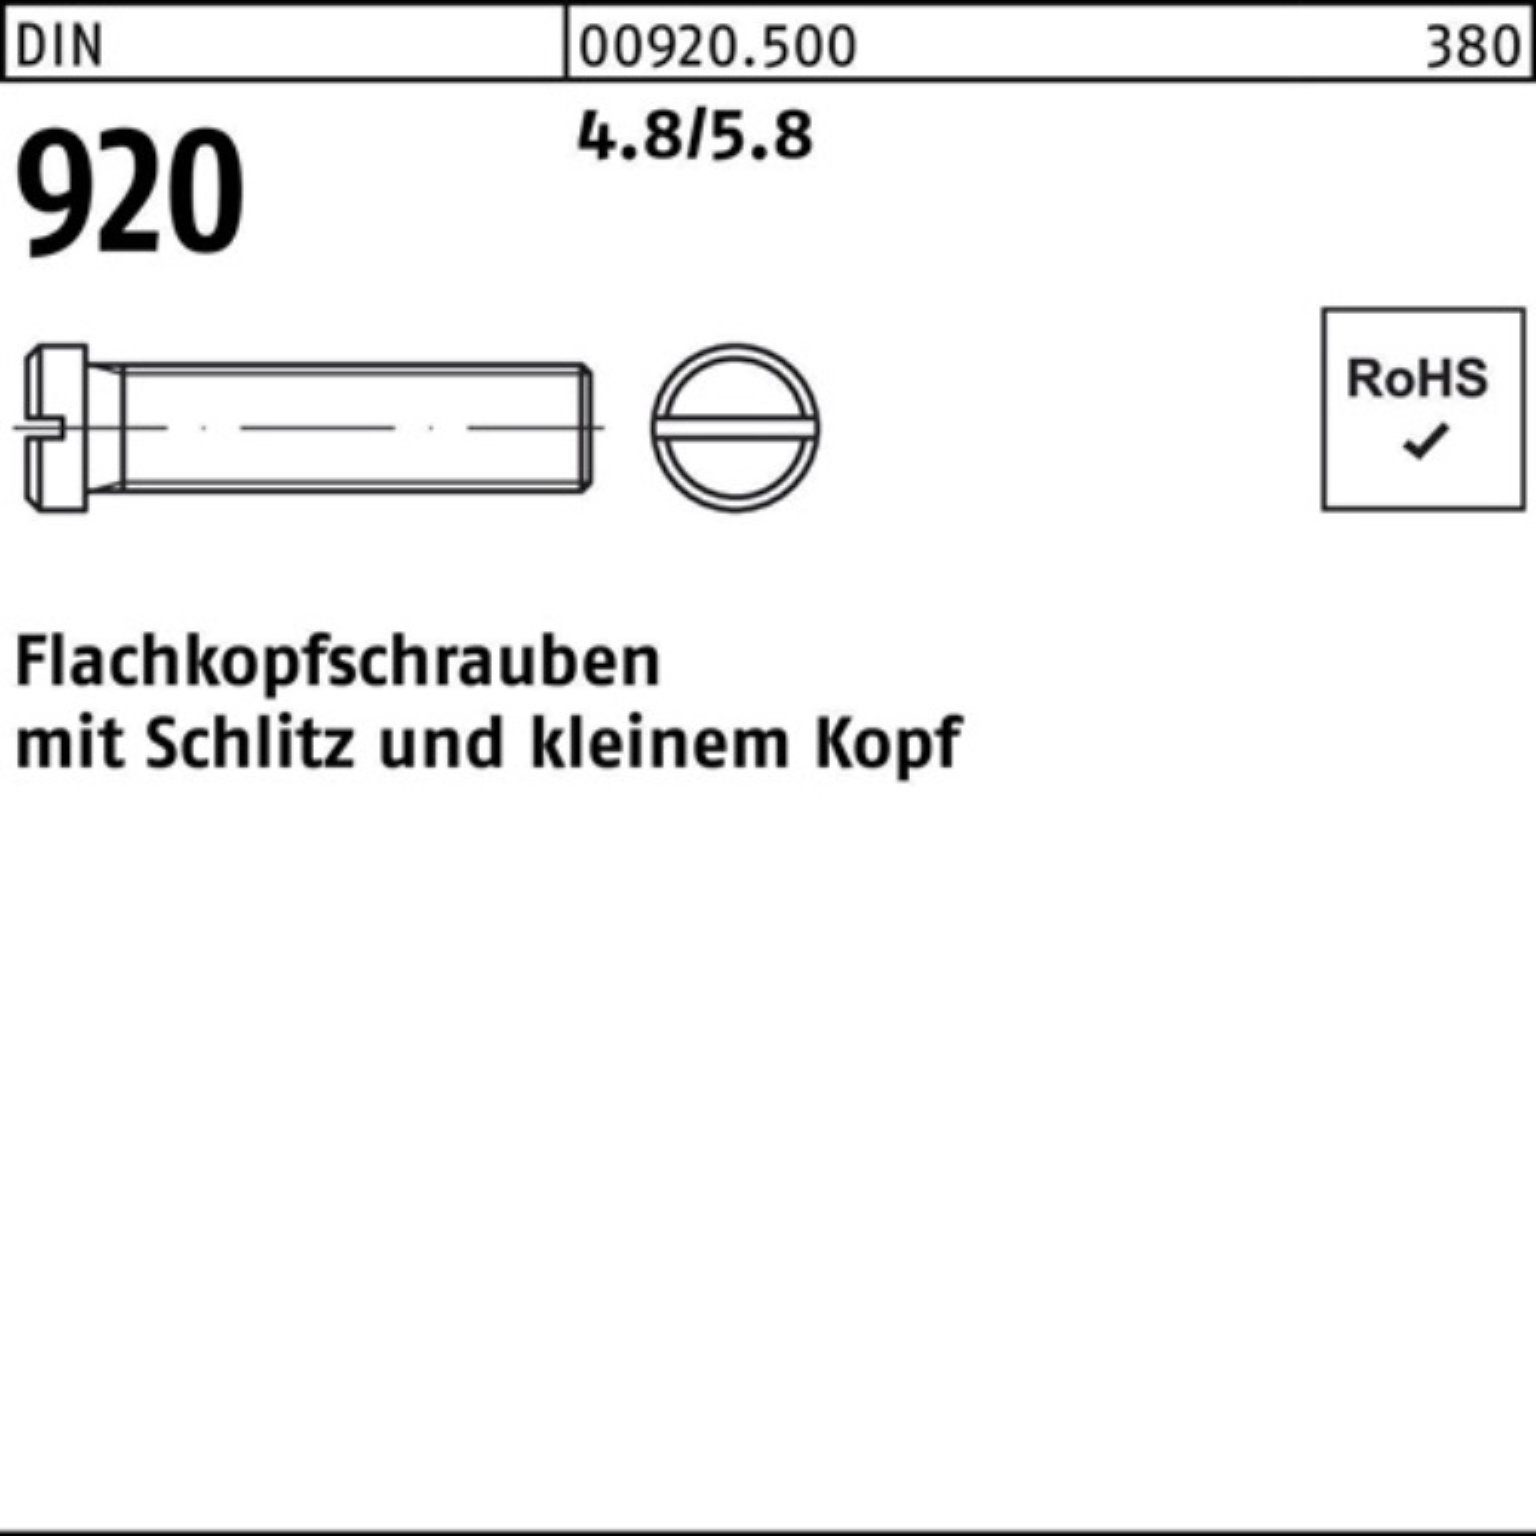 Reyher Schraube 100er Pack Flachkopfschraube DIN 920 Schlitz M4x 6 4.8/5.8 100 Stück